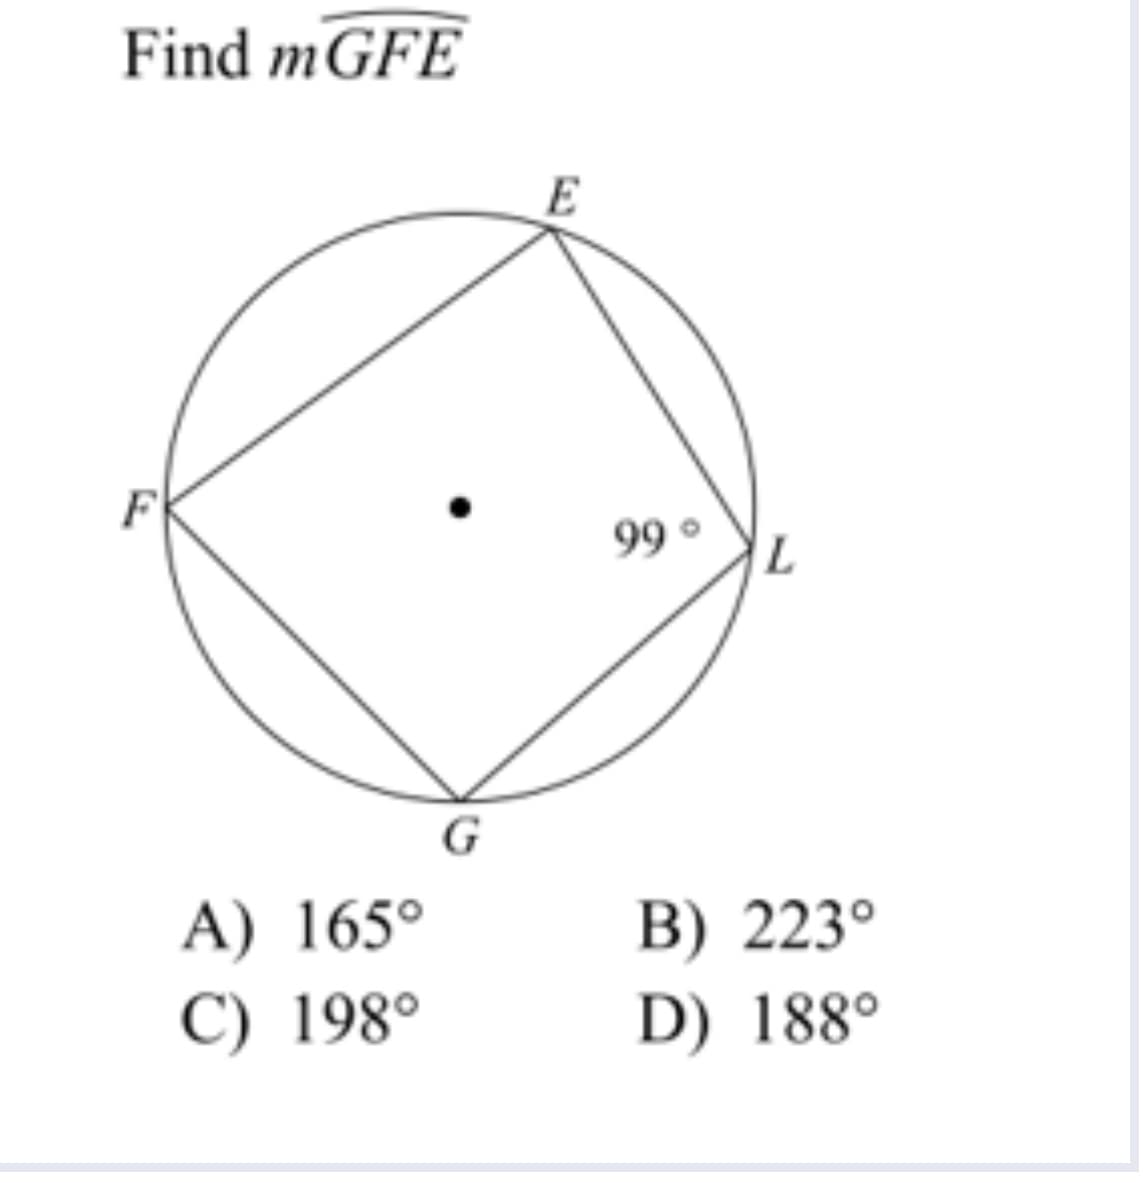 Find mGFE
99 °
G
A) 165°
B) 223°
D) 188°
C) 198°
